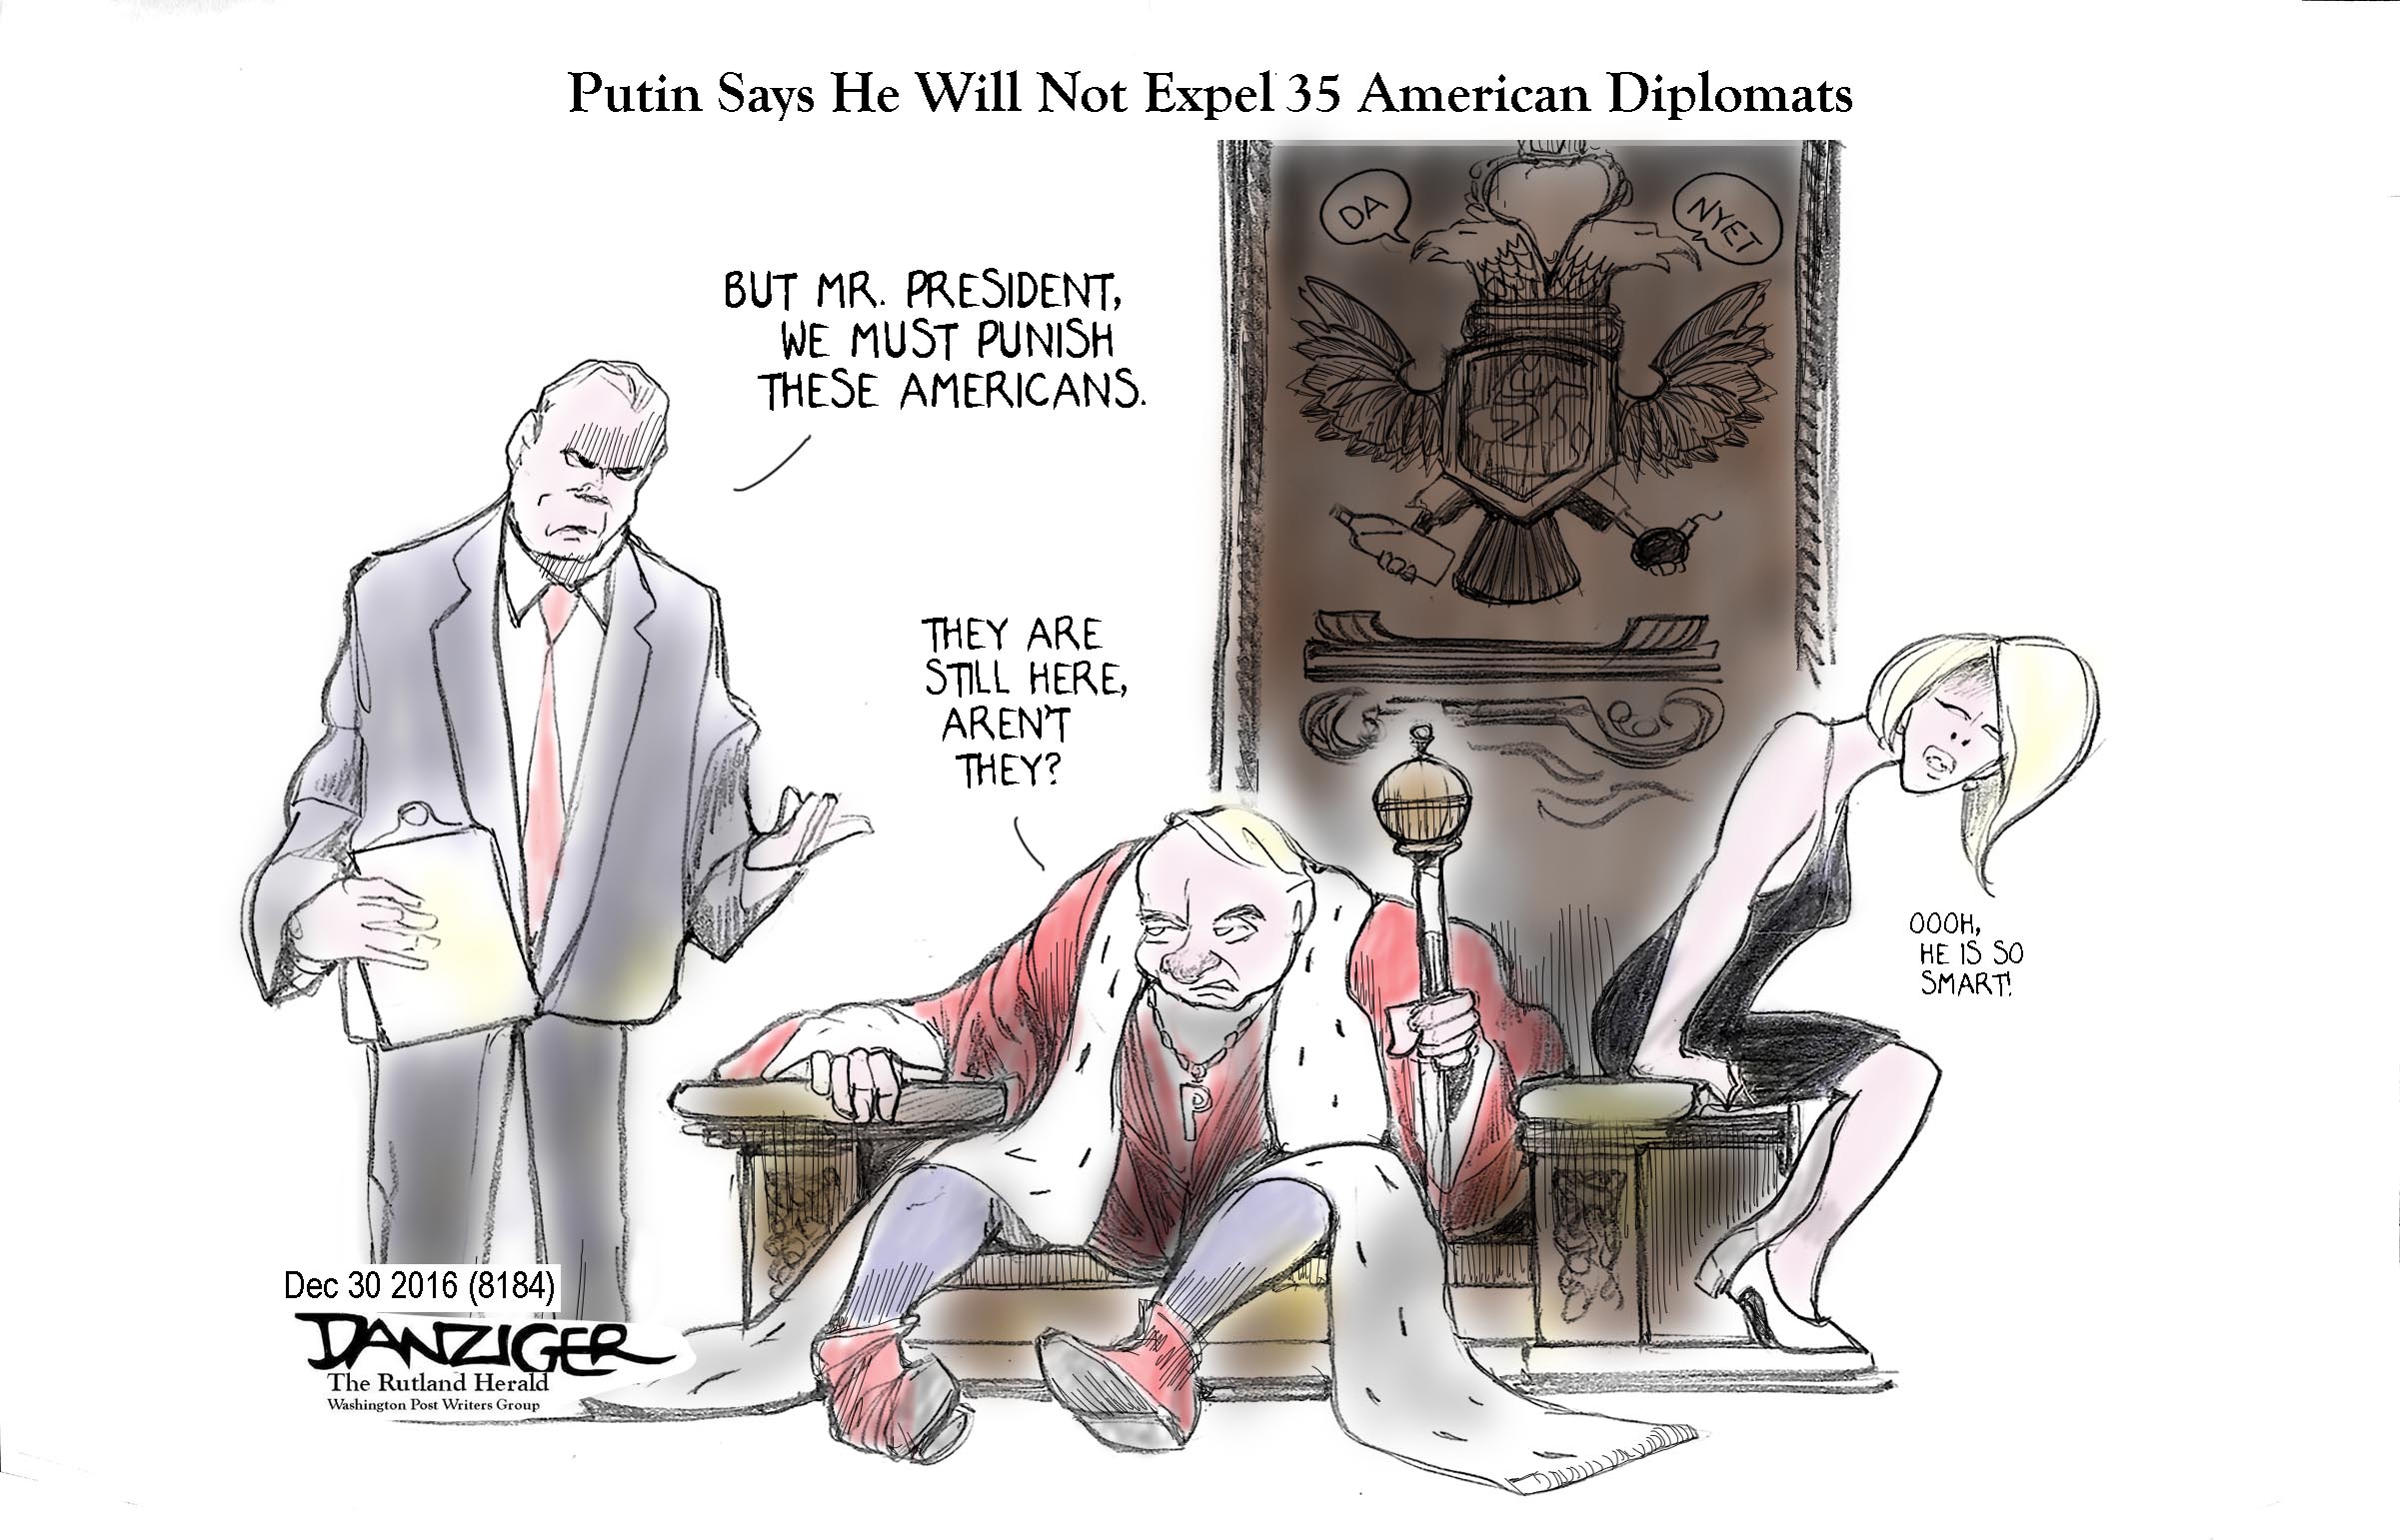 Putin, No expel US diplomats, political cartoon